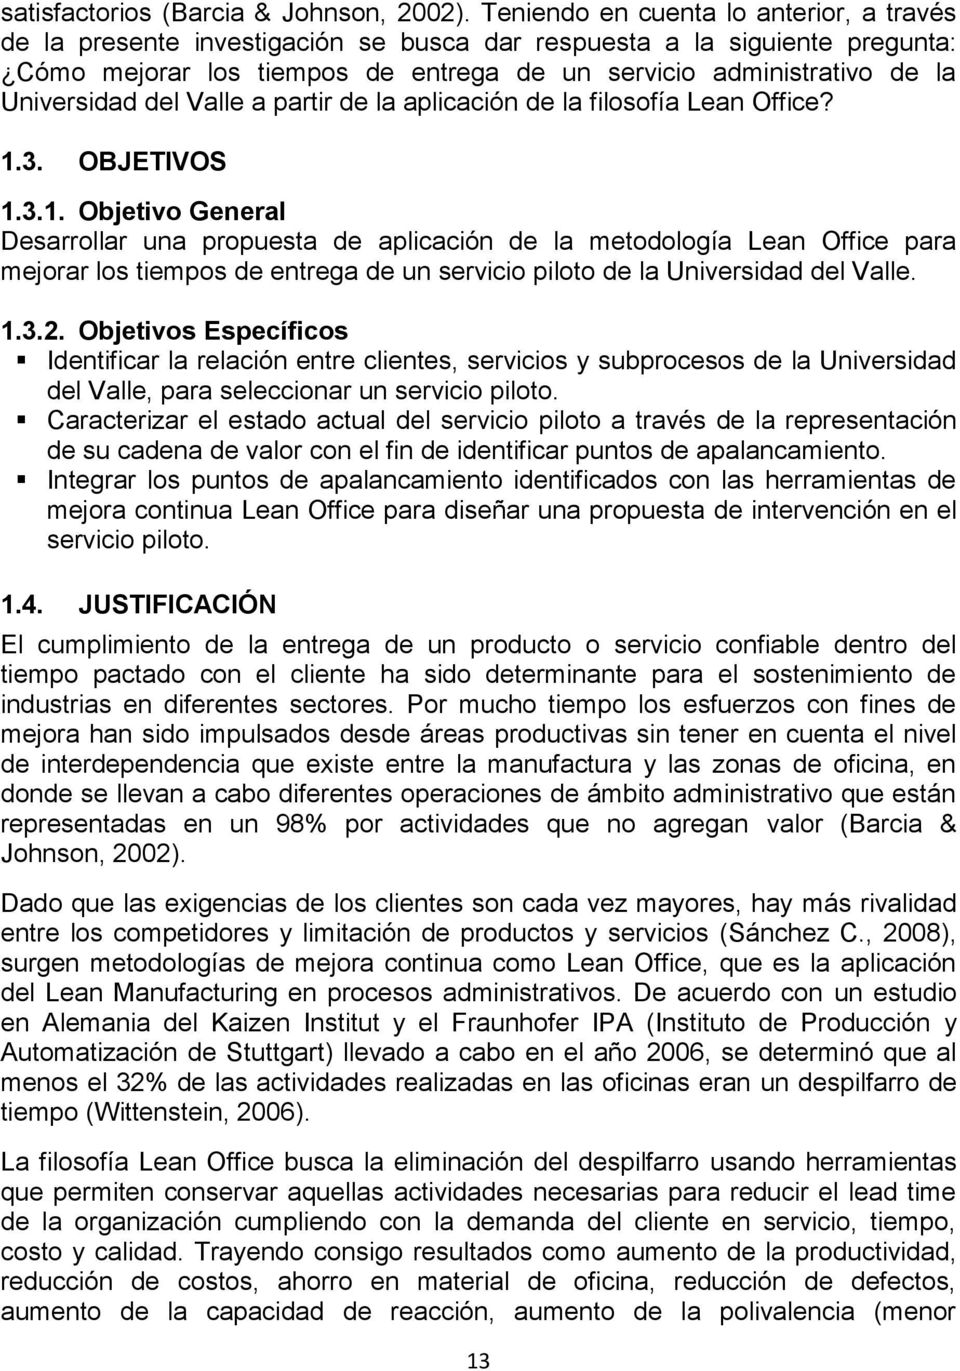 Universidad del Valle a partir de la aplicación de la filosofía Lean Office? 1.